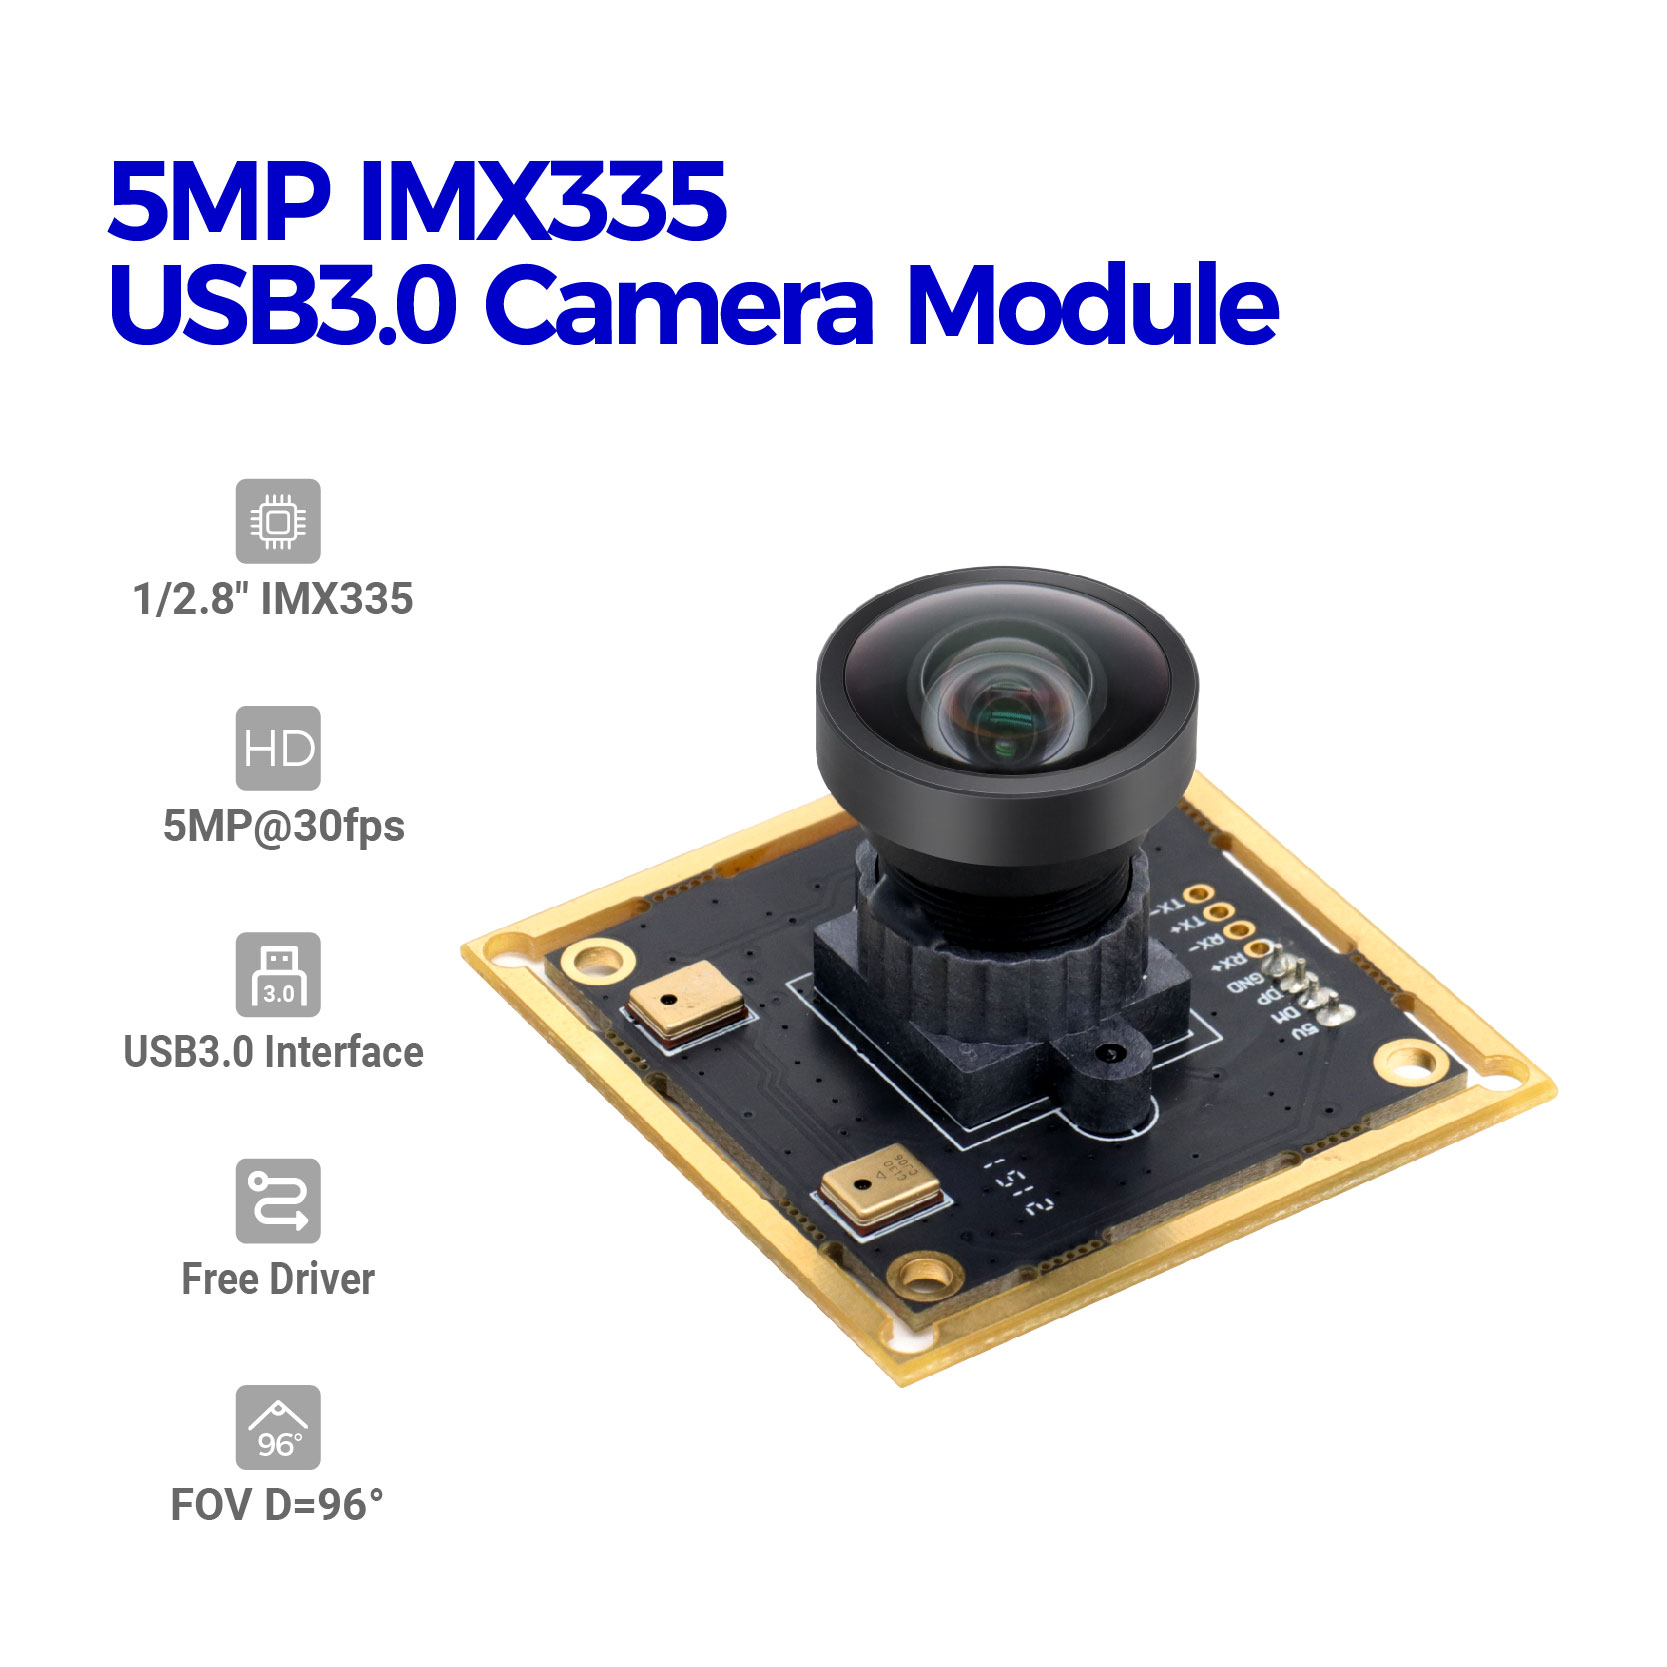 5MP IMX335 USB3.0 ಕ್ಯಾಮೆರಾ ಮಾಡ್ಯೂಲ್